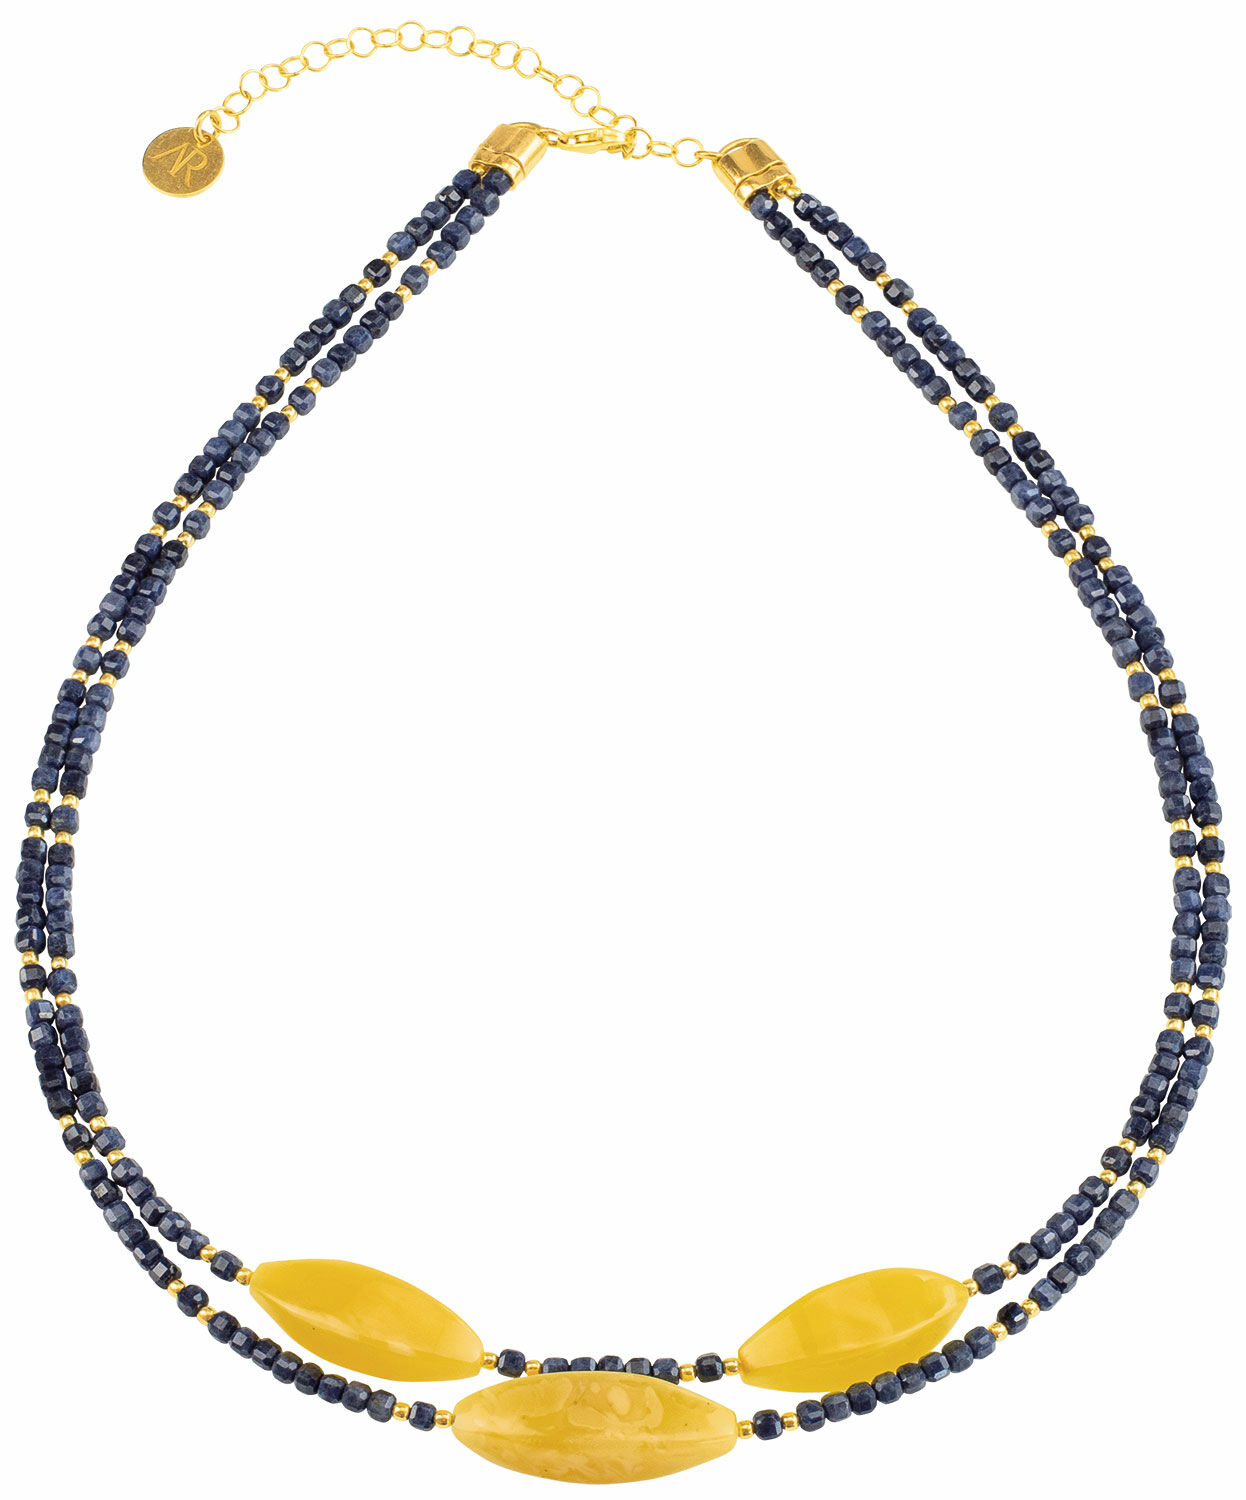 Amber necklace "Sea Sparkle"